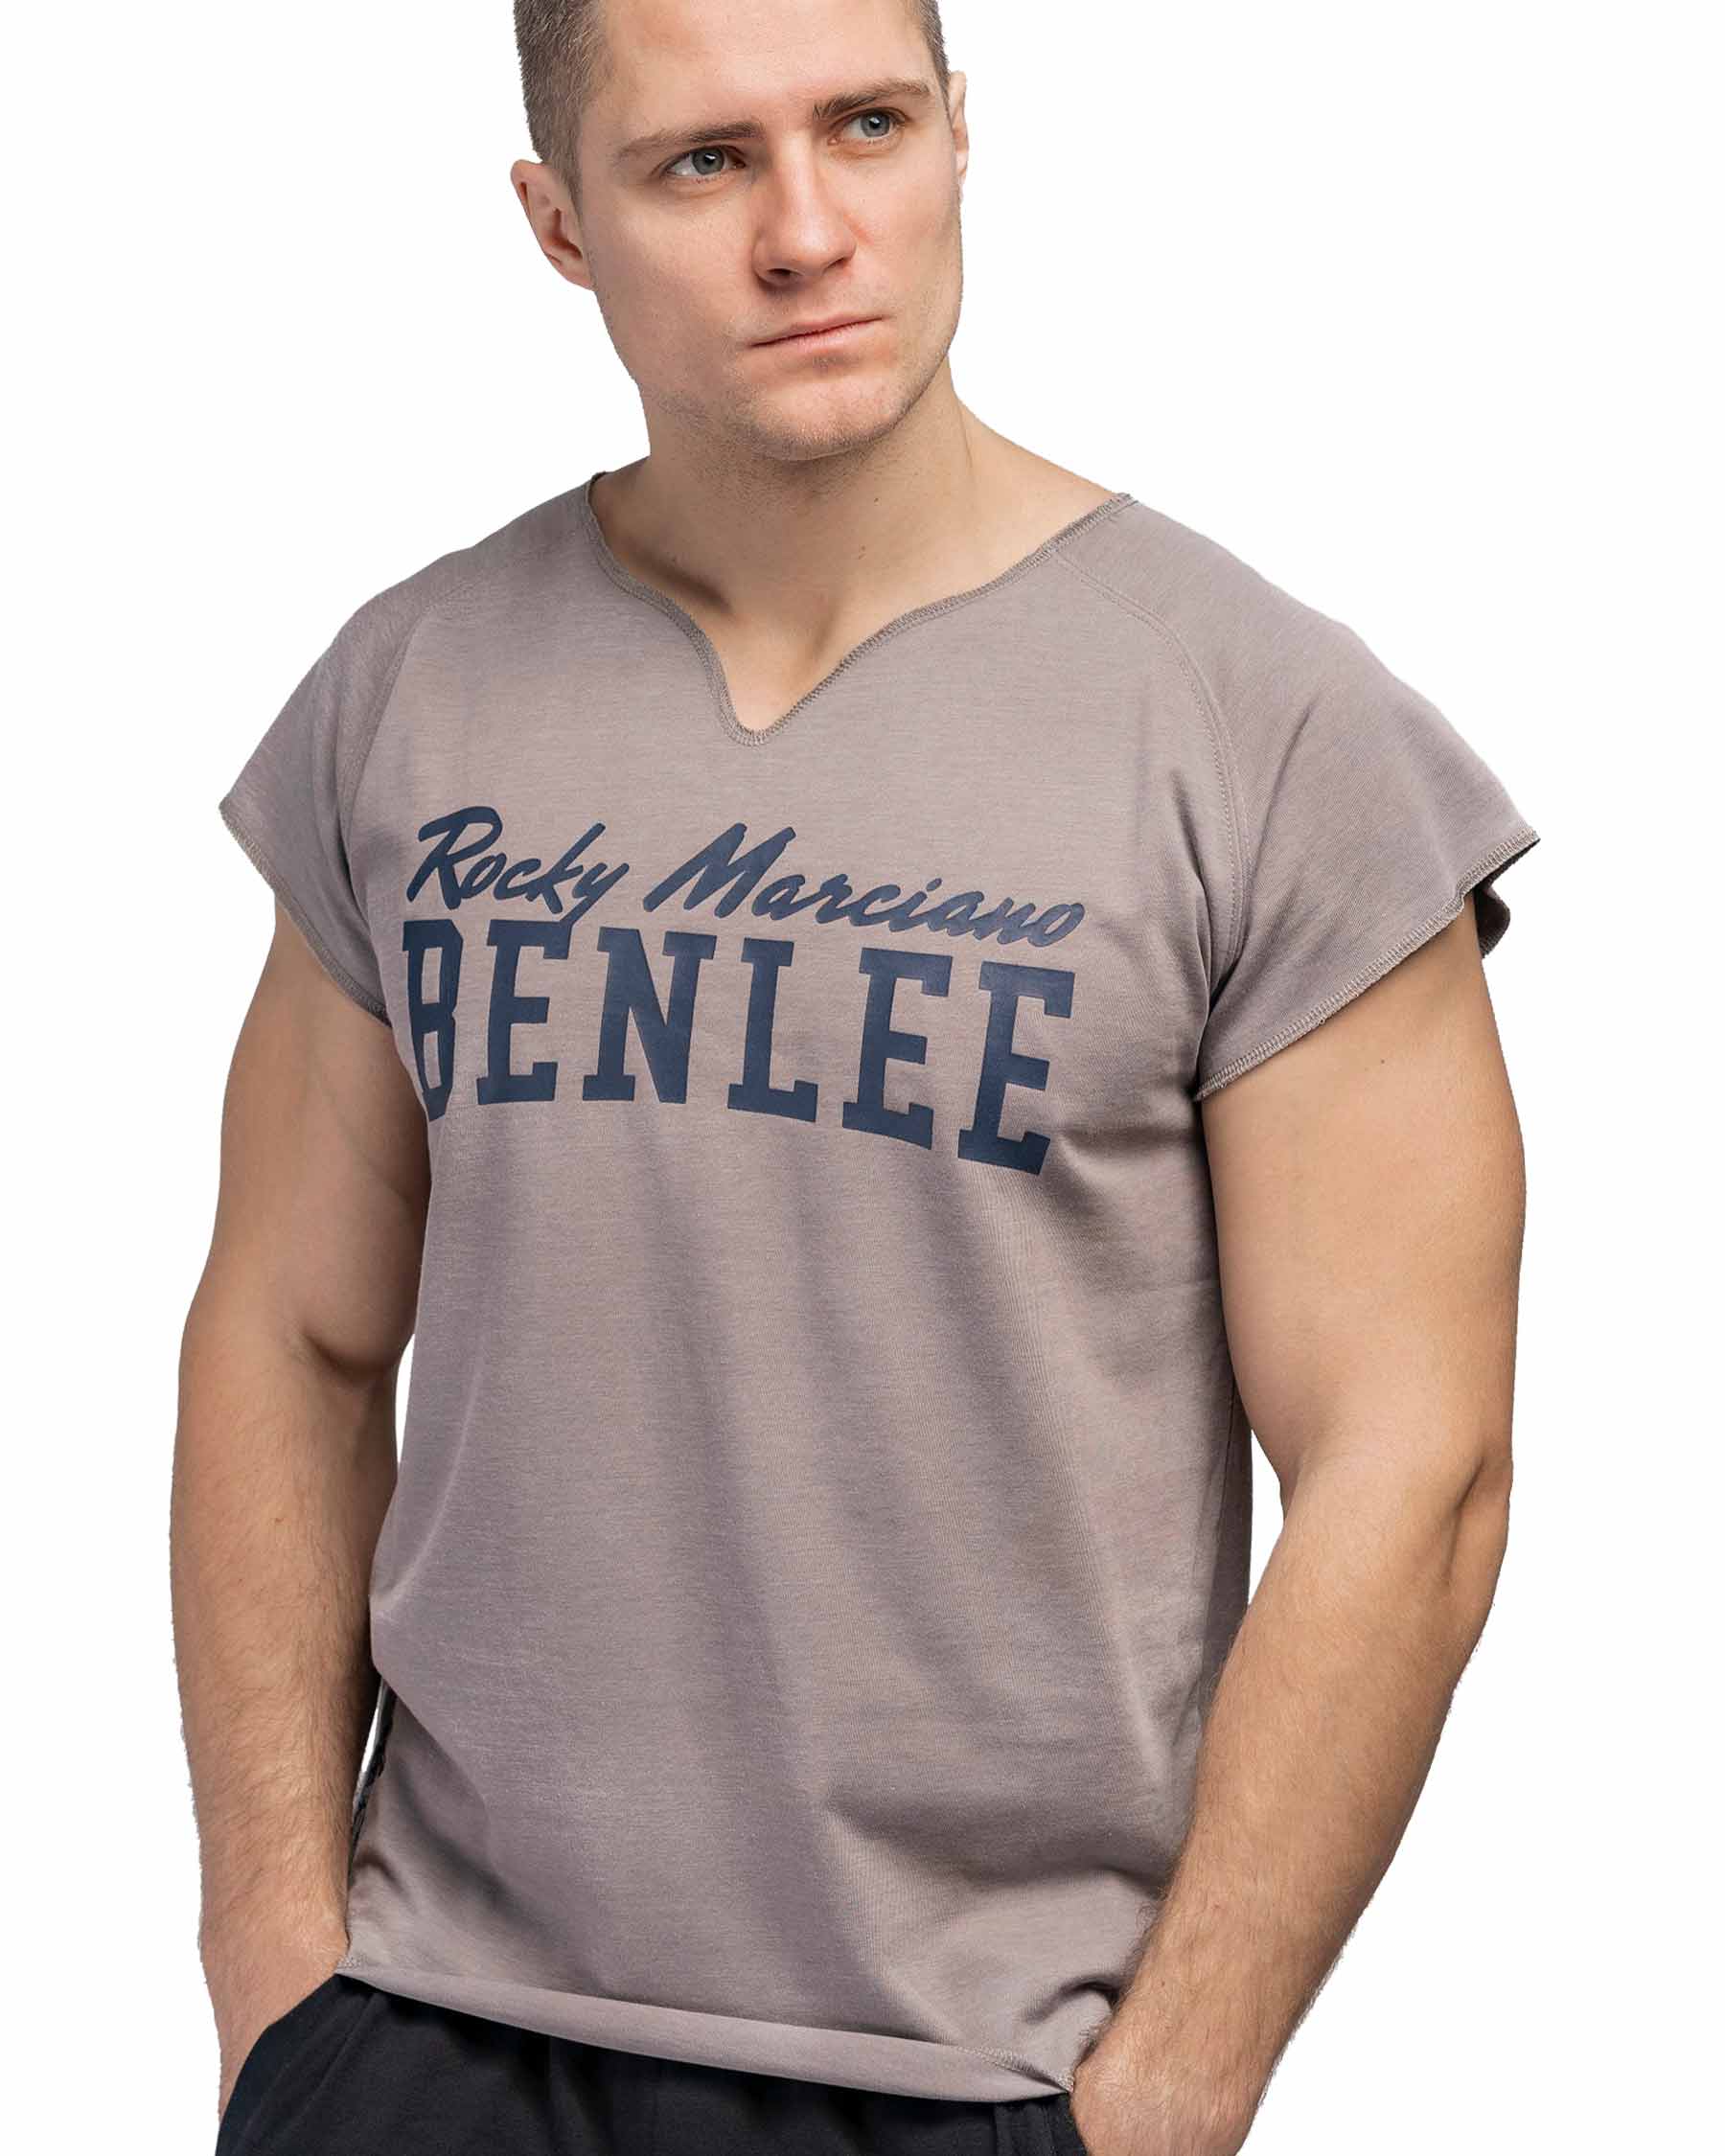 BenLee Muscle shirt Edwards - Herren T-Shirt - BenLee Boxsport und  Sportswear